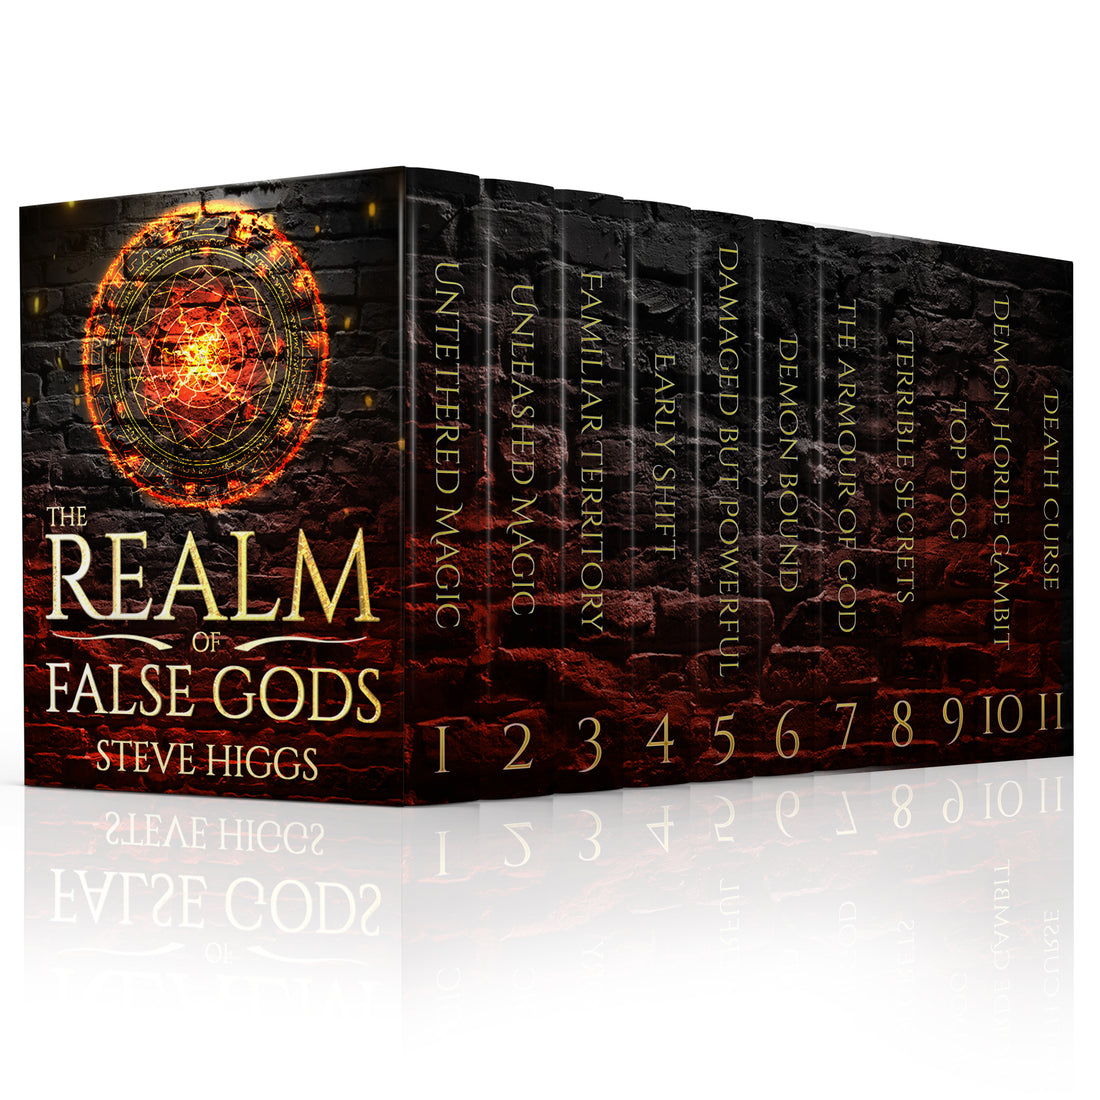 Top Dog : Realm of False Gods Book 9